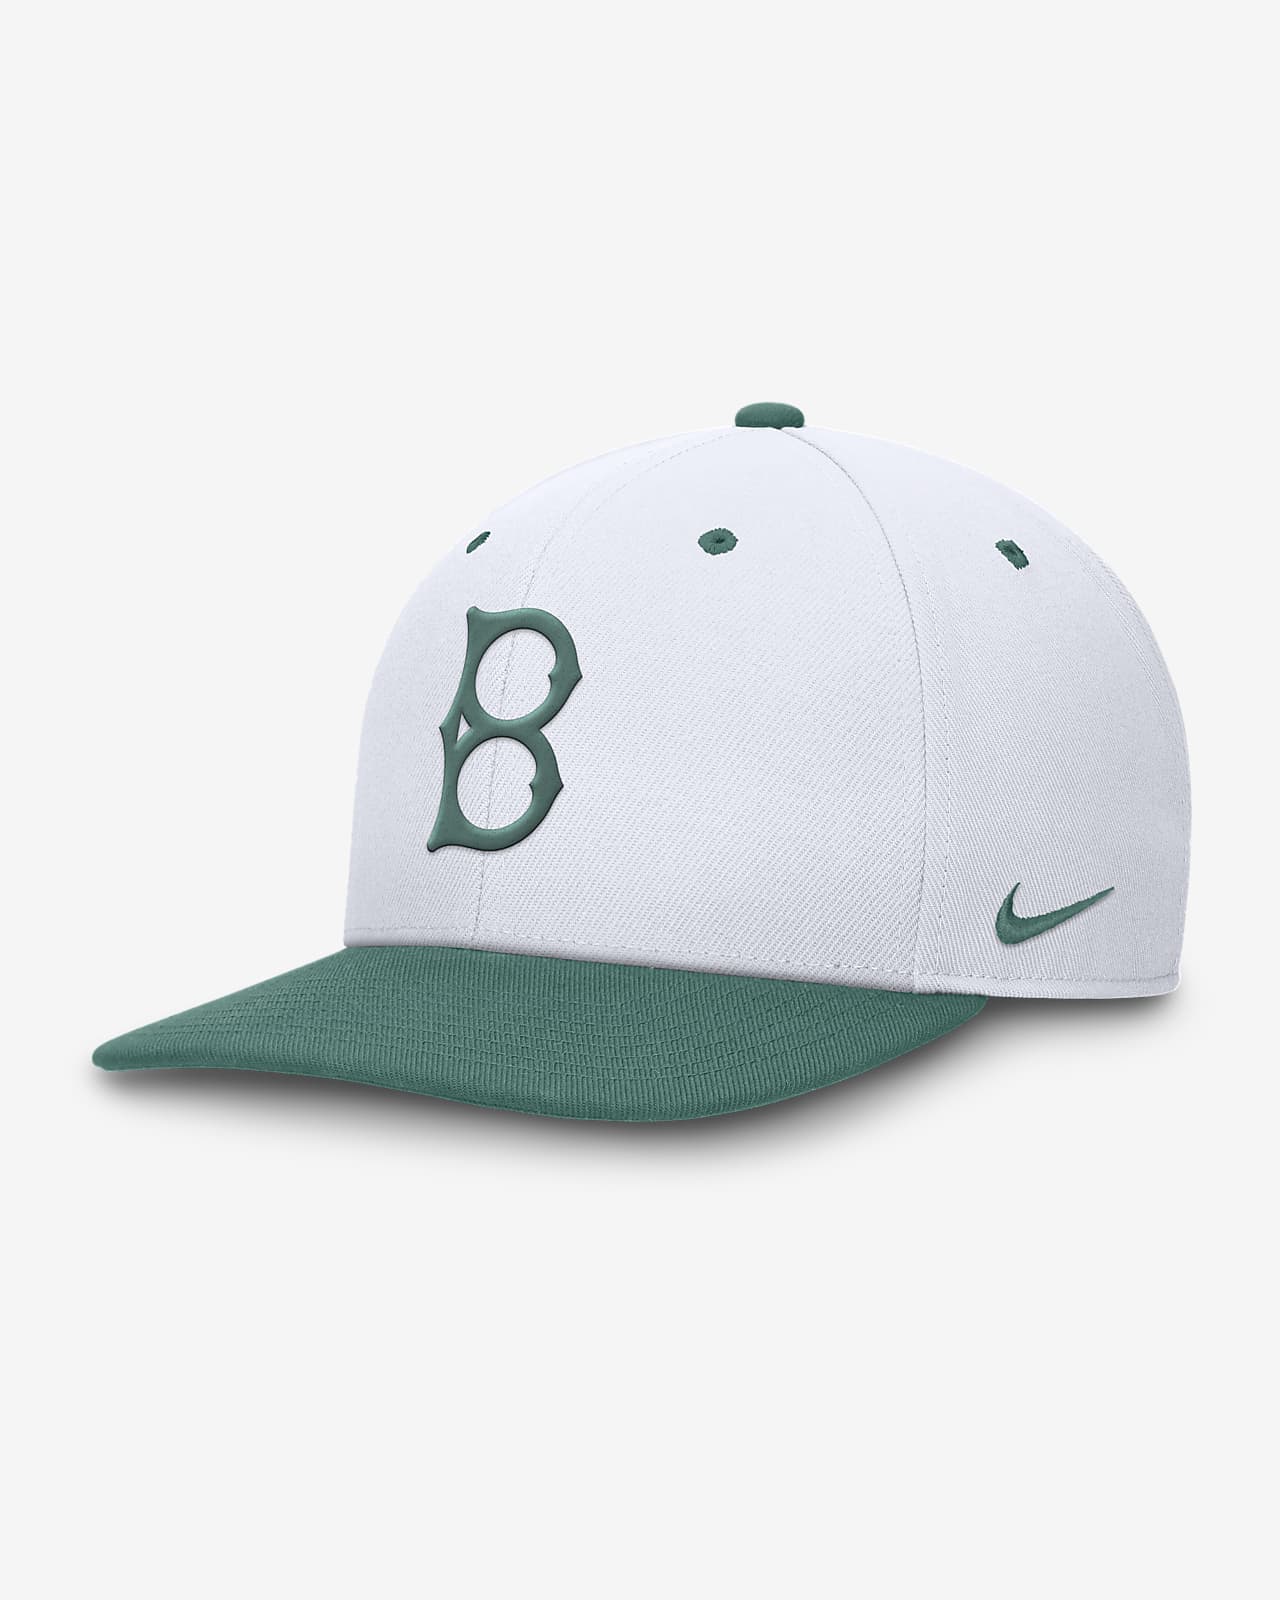 Brooklyn Dodgers Bicoastal 2-Tone Pro Men's Nike Dri-FIT MLB Adjustable Hat